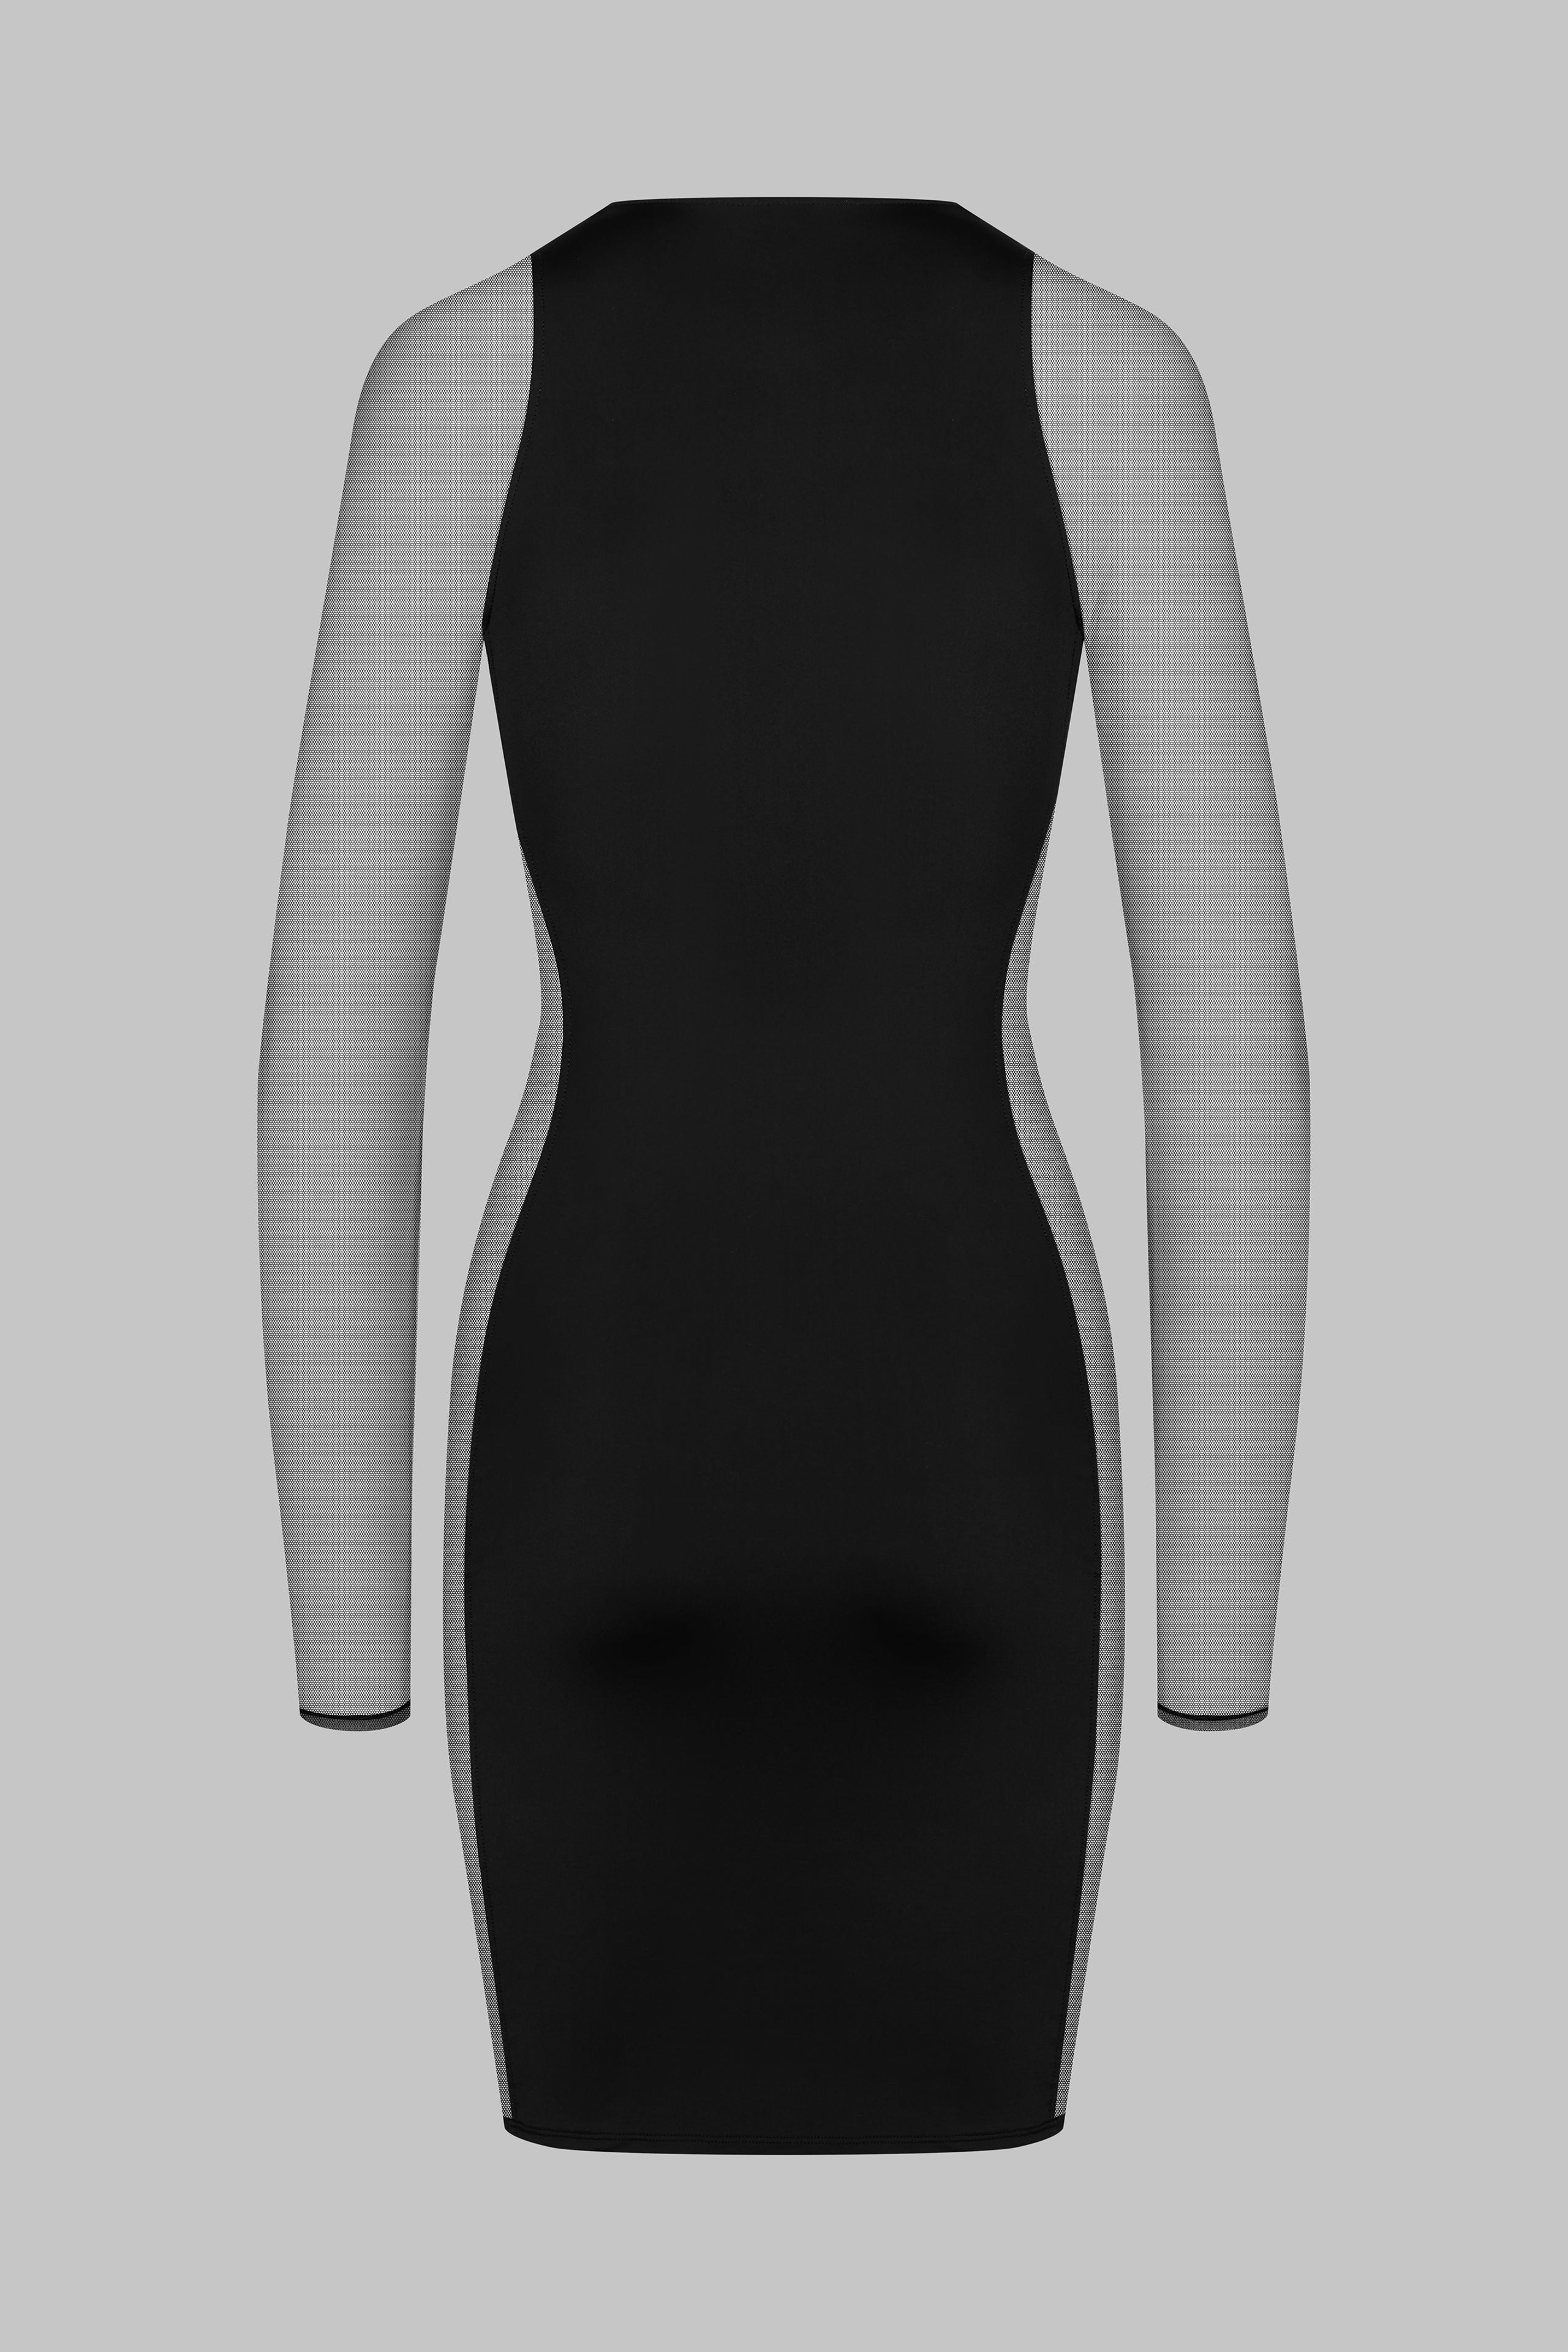 020 - Stretchiges, kurzes Kleid mit eckigem Ausschnitt